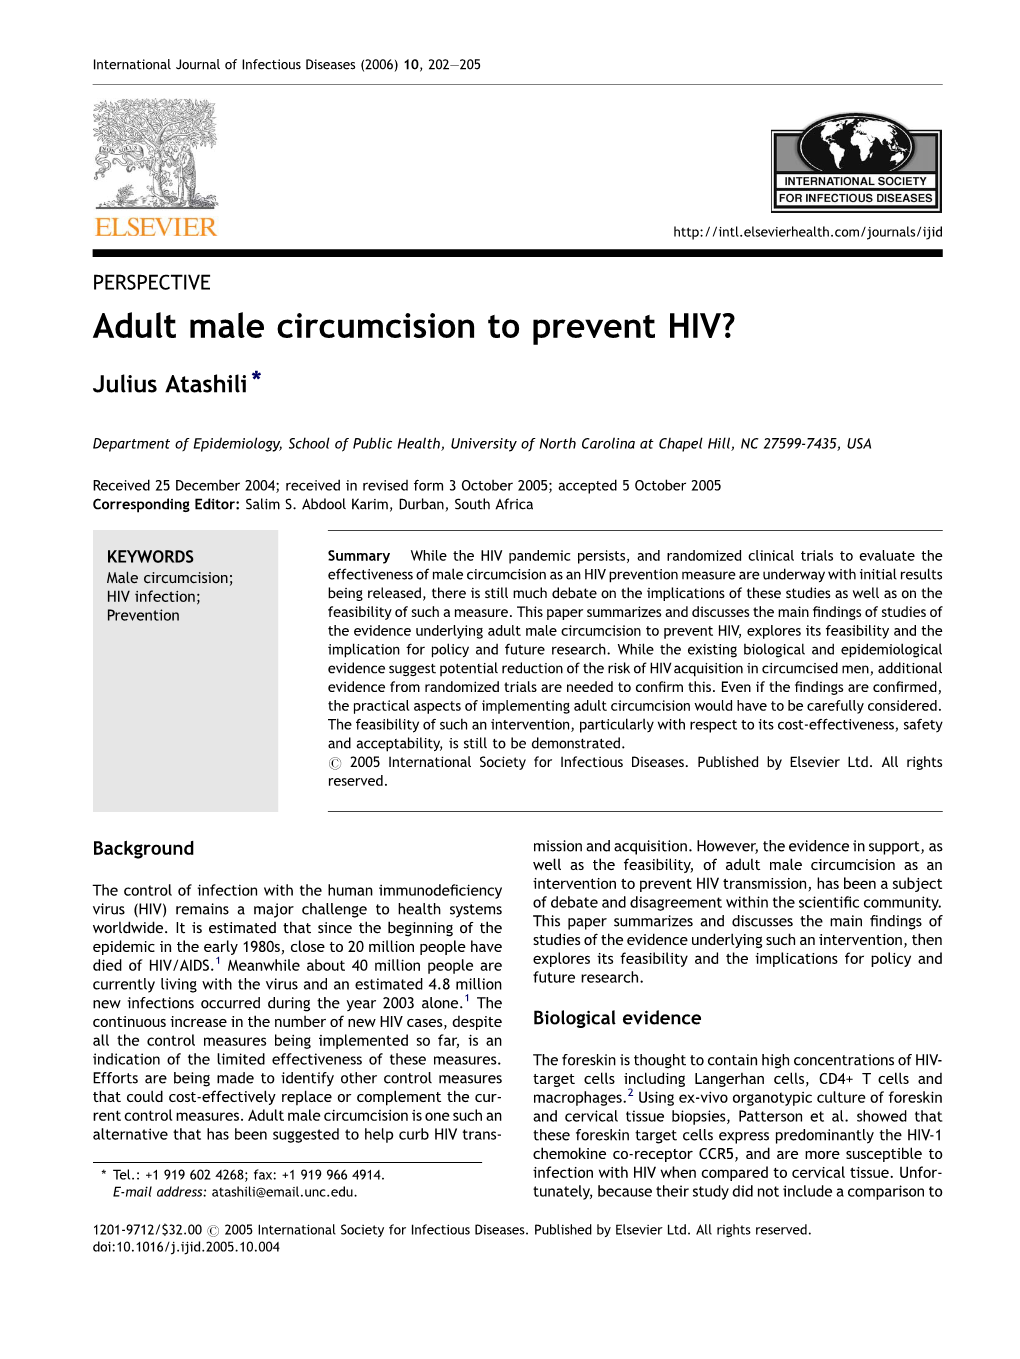 Adult Male Circumcision to Prevent HIV?